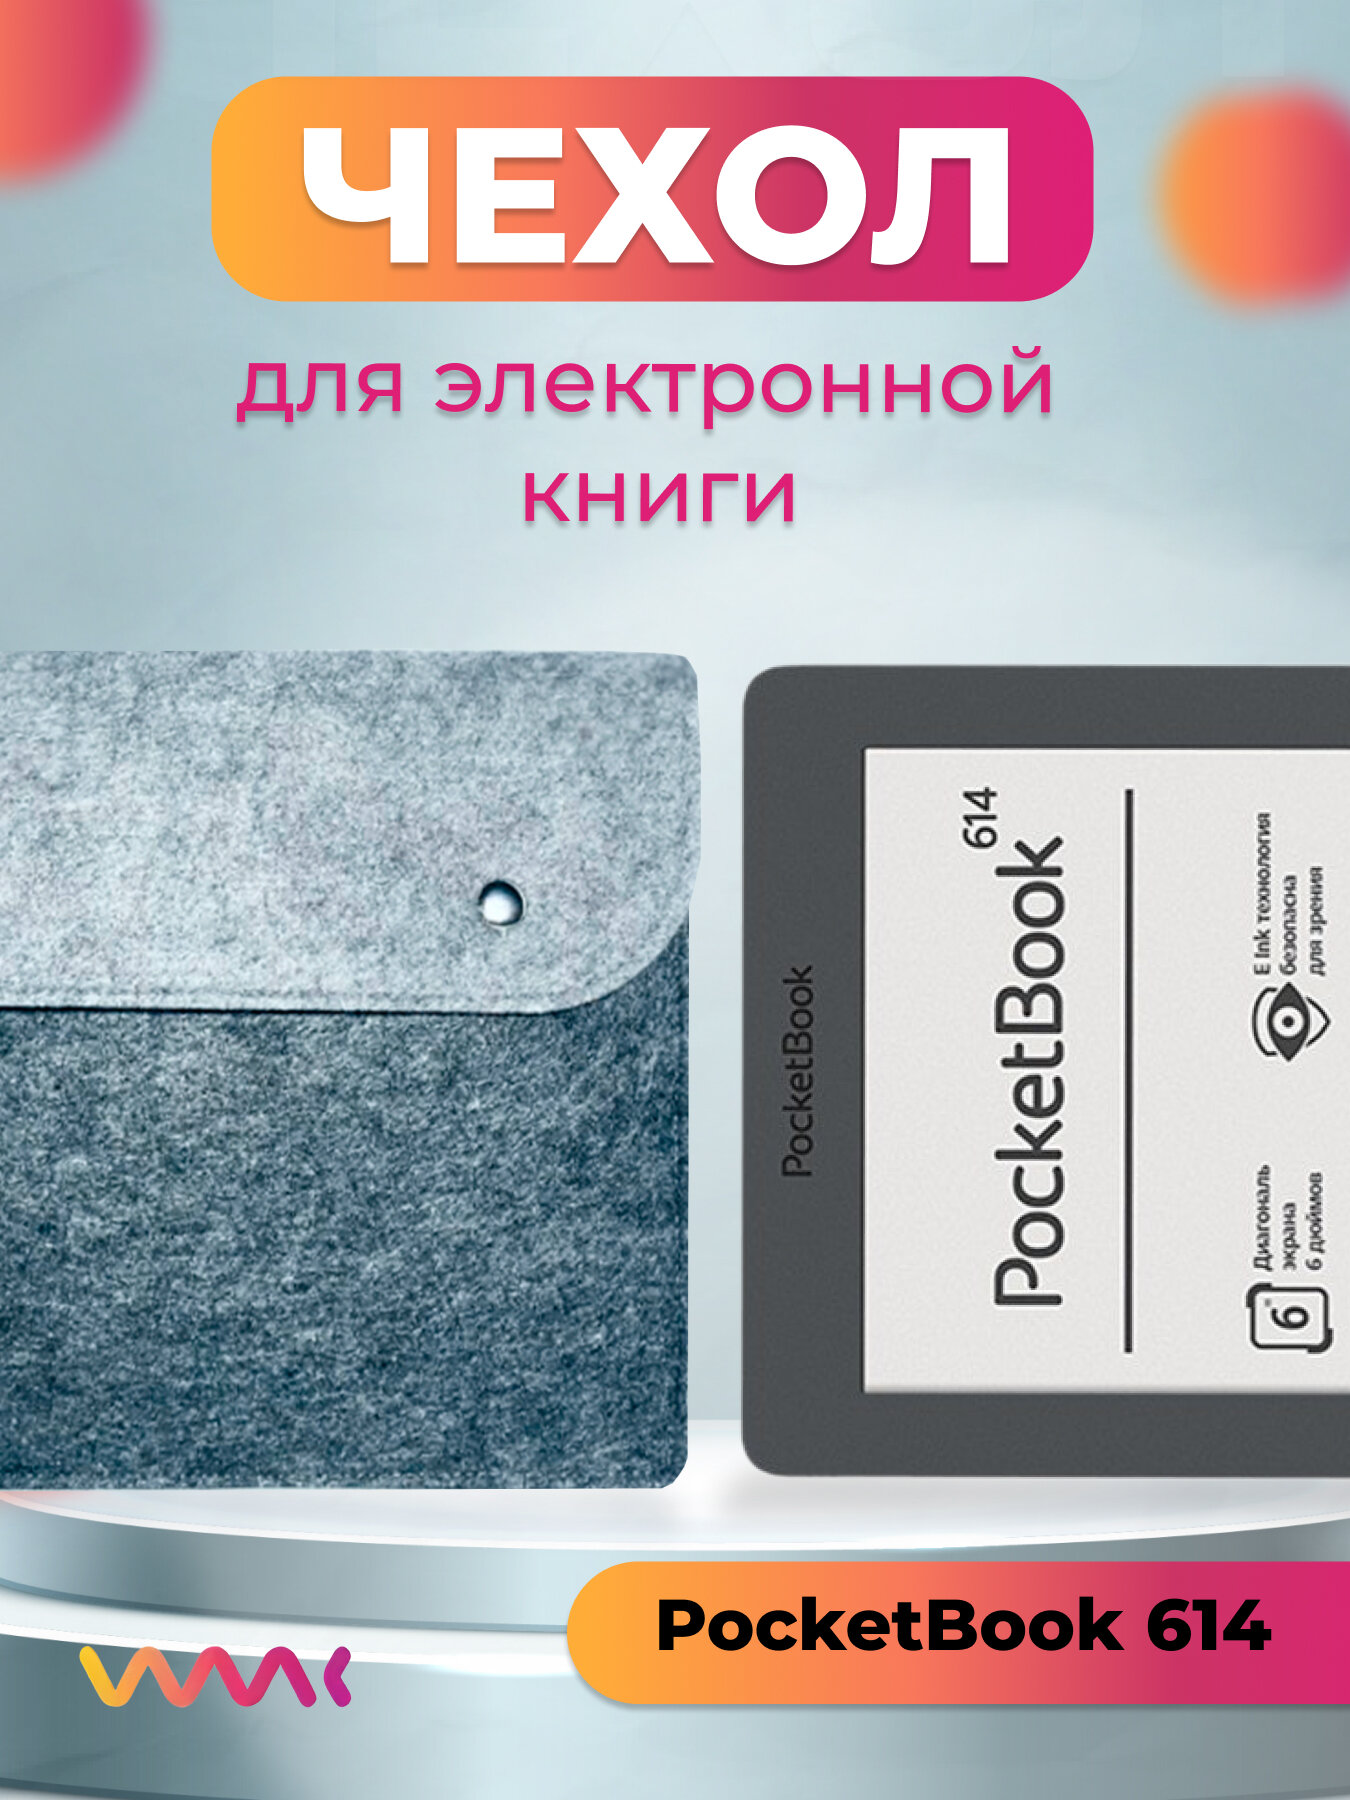 Чехол для электронной книги PocketBook 614